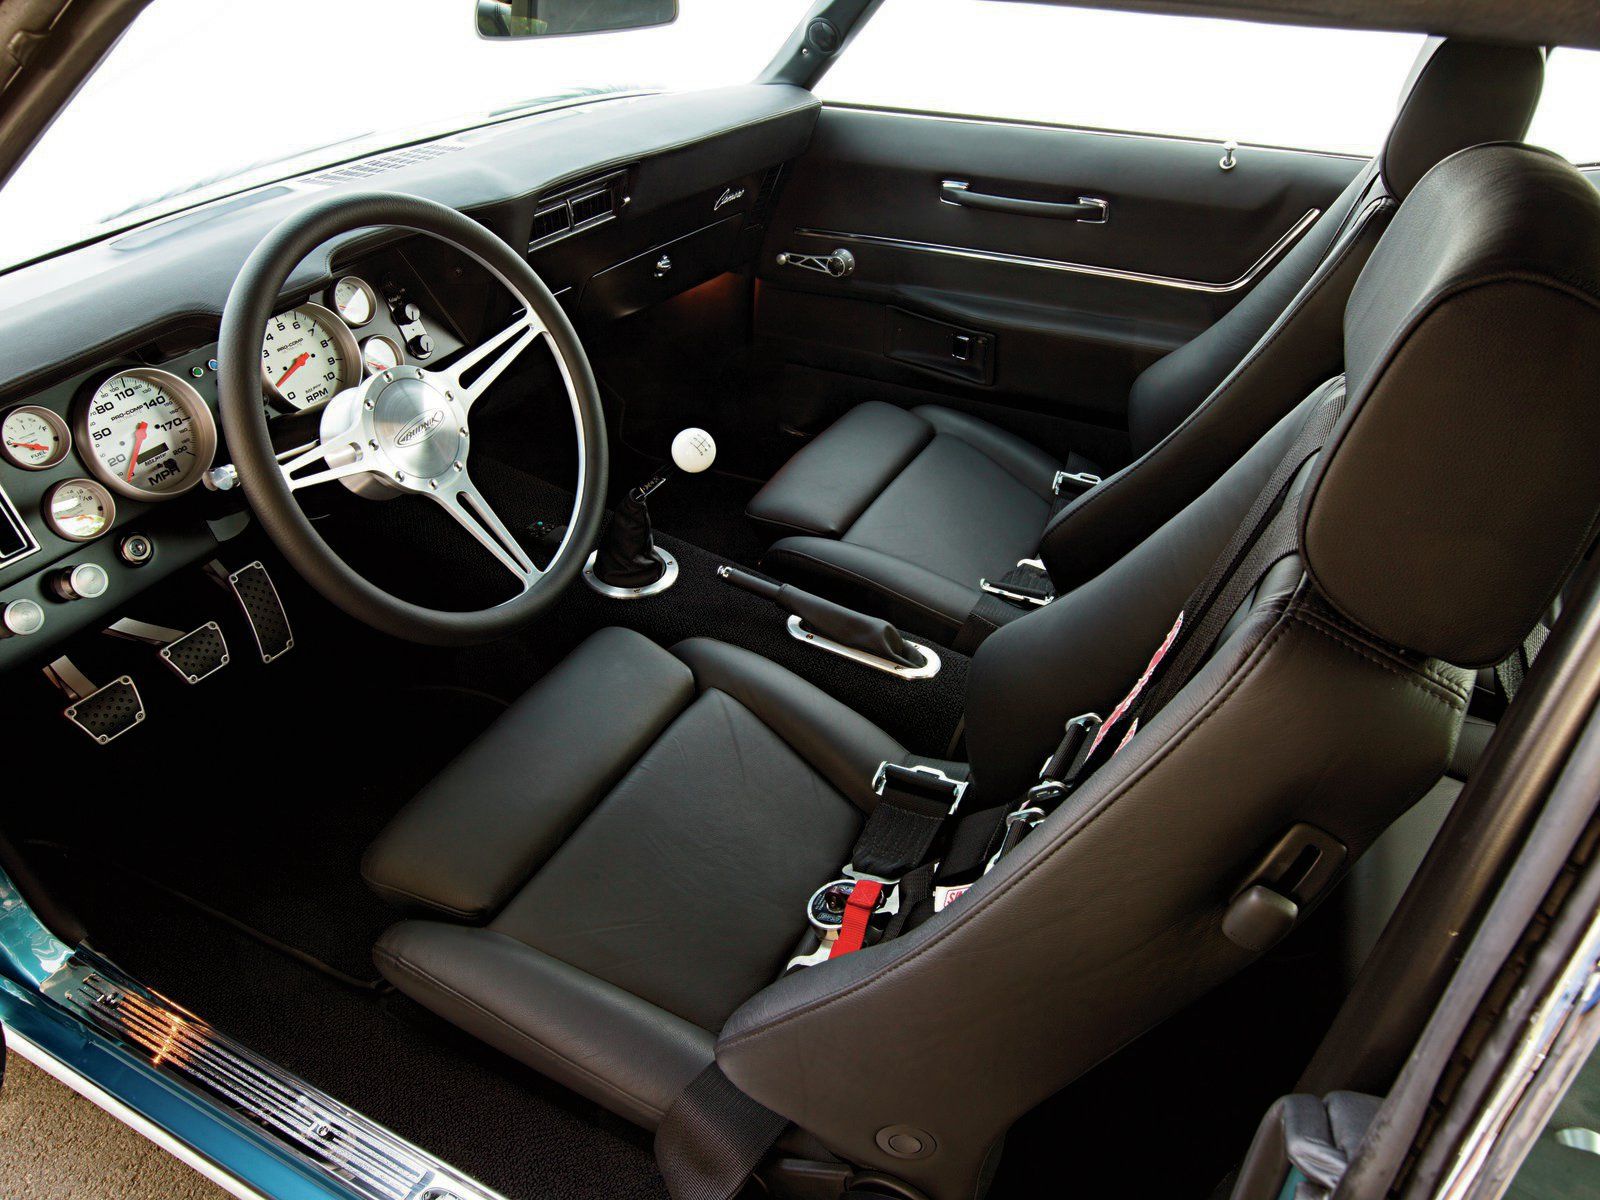 1969 Camaro Interior.